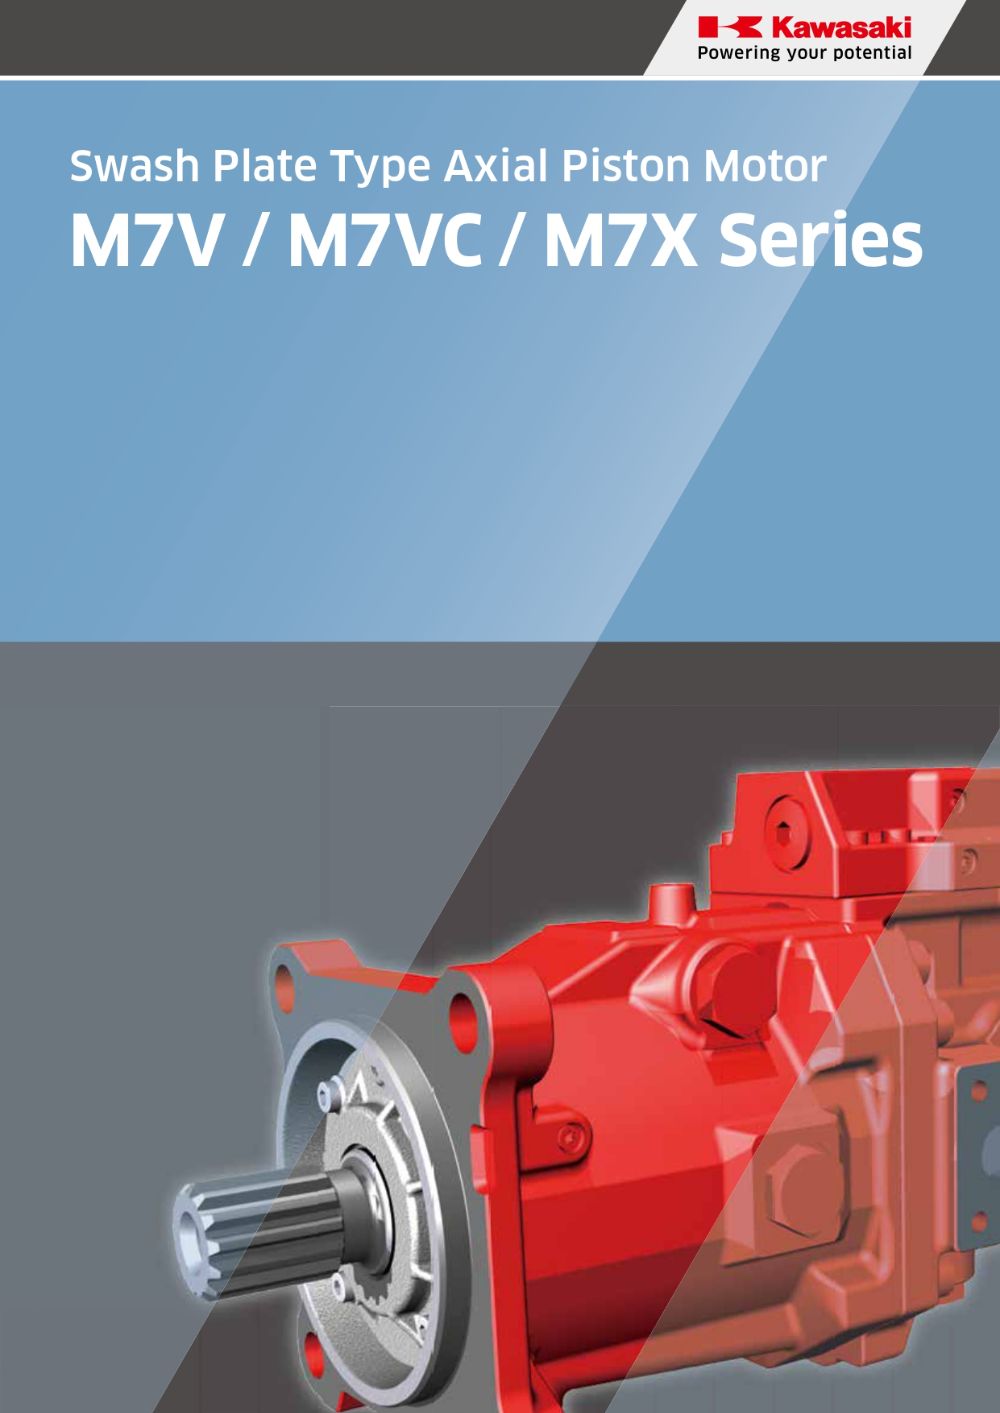 M7V / M7VC / M7X Series